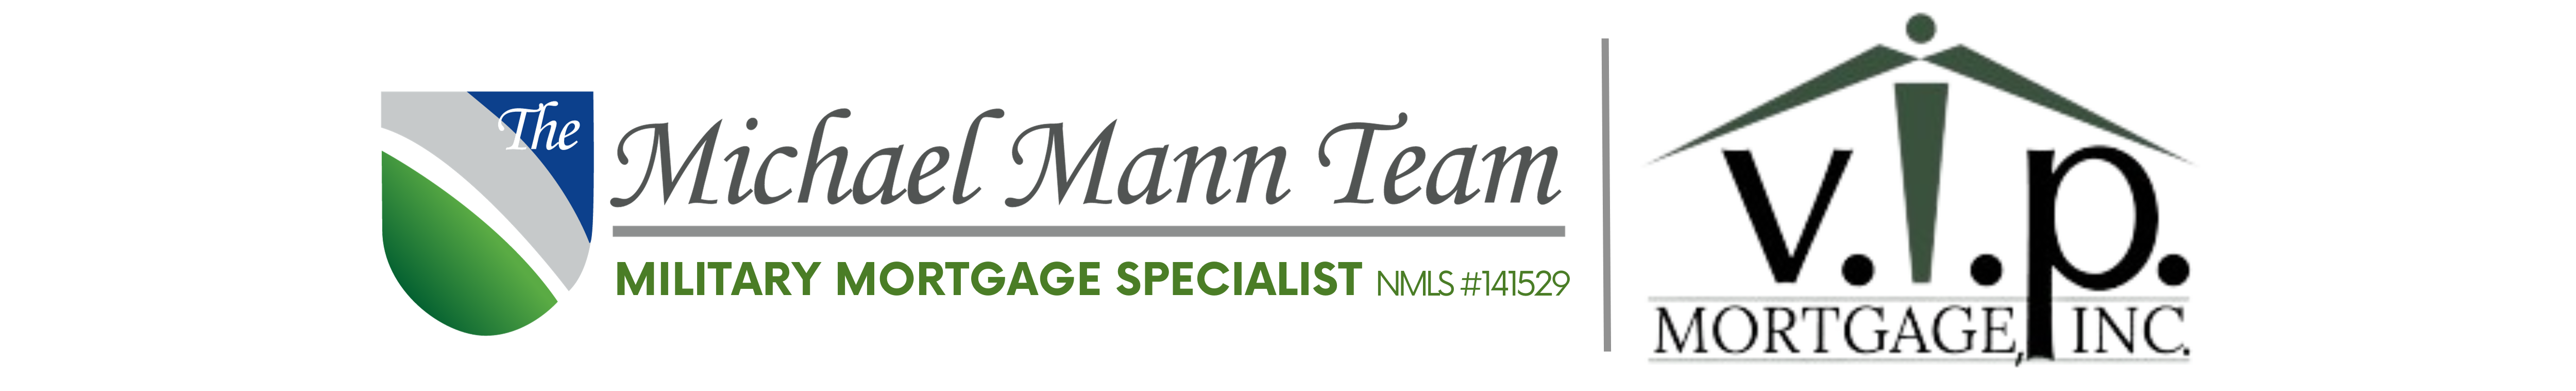 The Michael Mann Team Logo